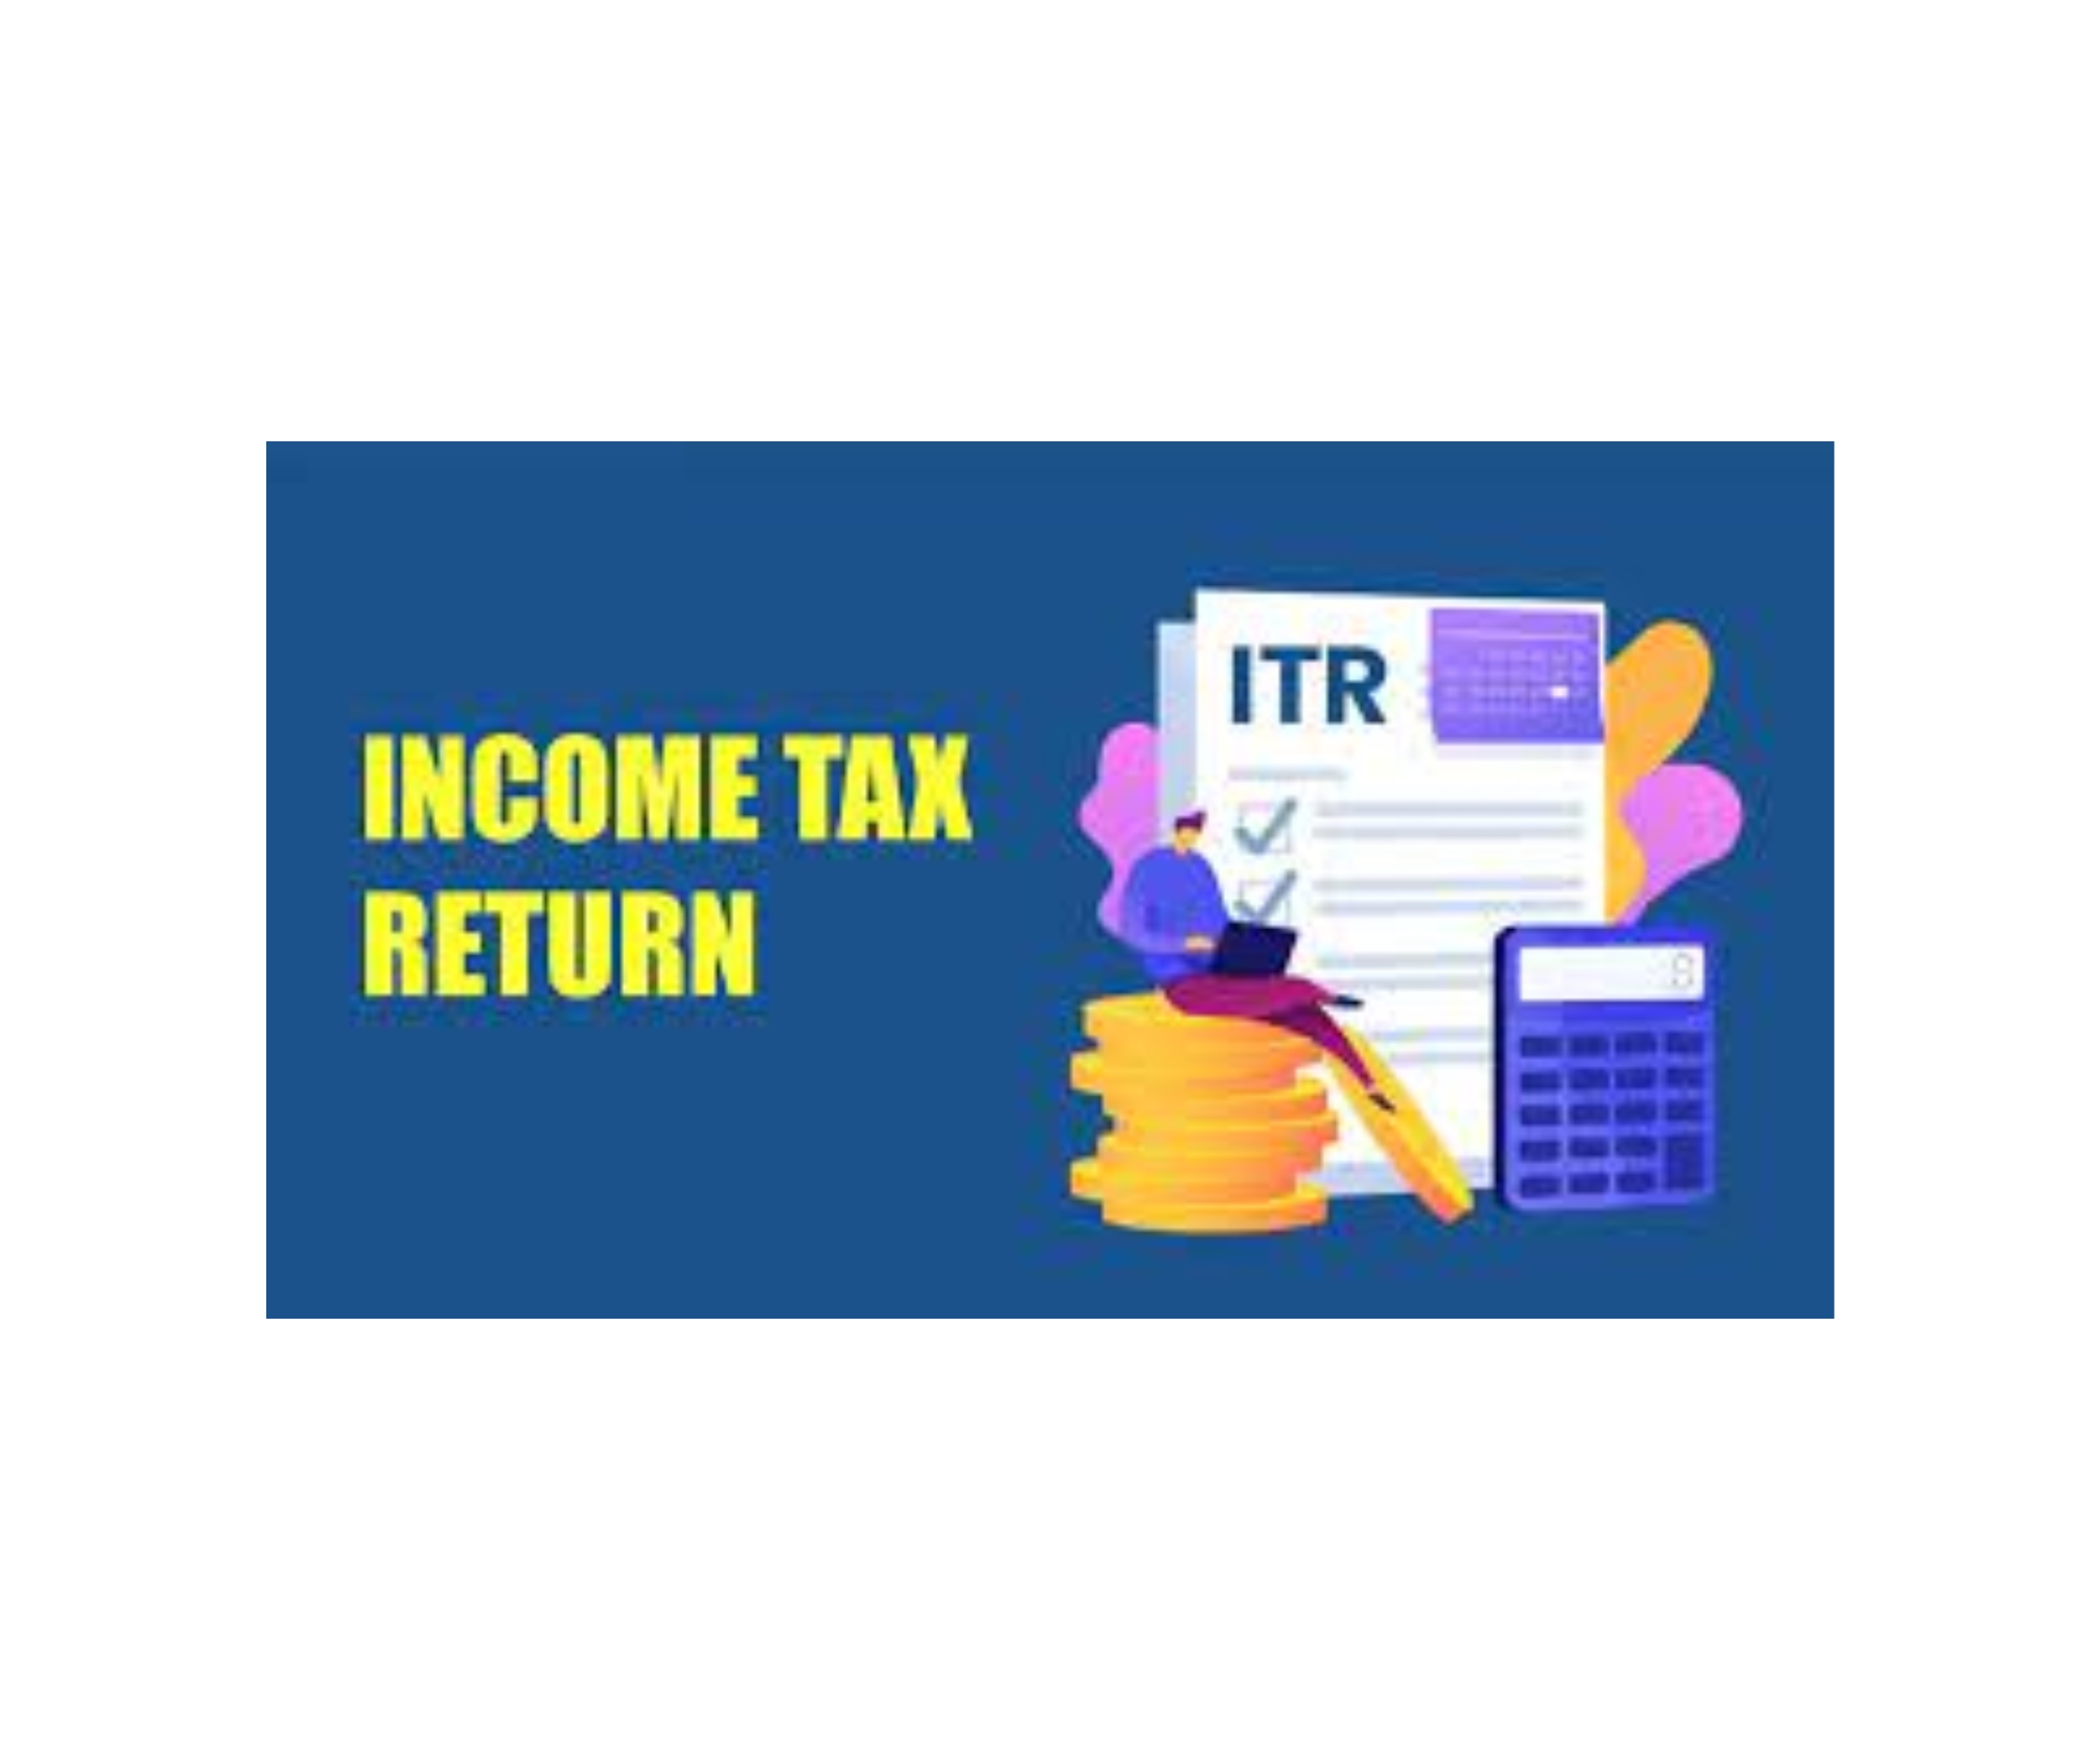 Company tax return